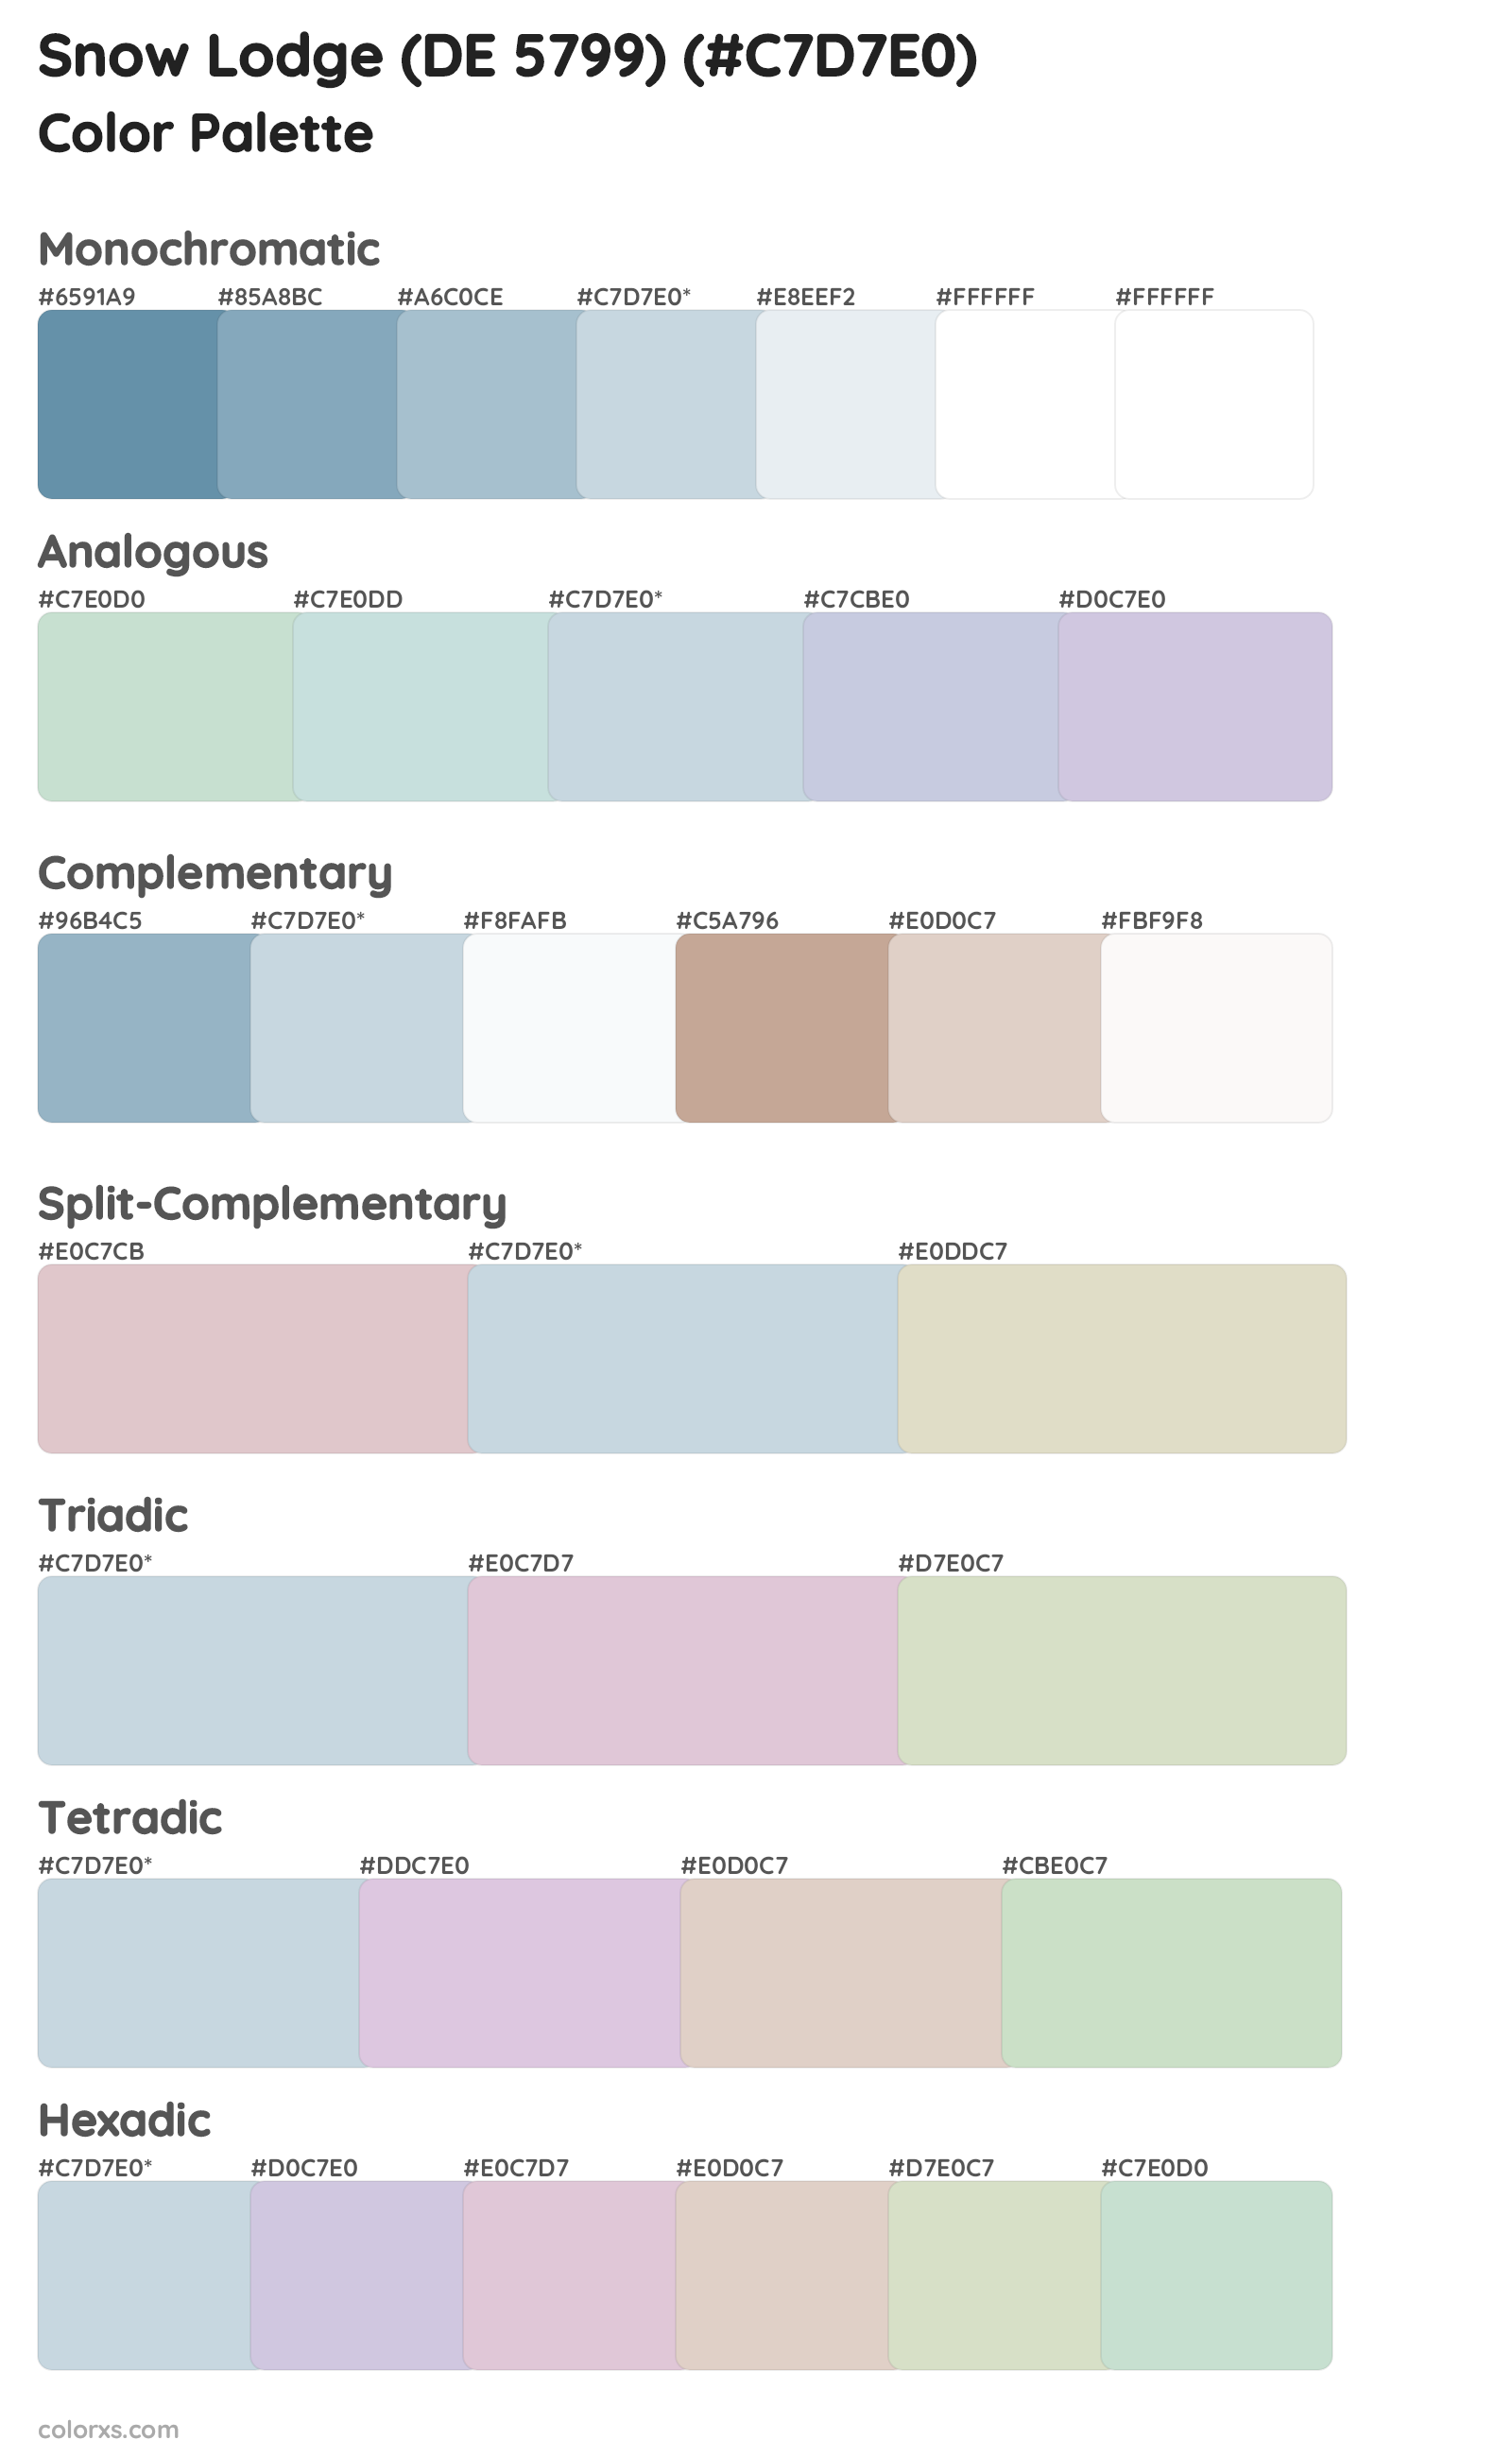 Snow Lodge (DE 5799) Color Scheme Palettes